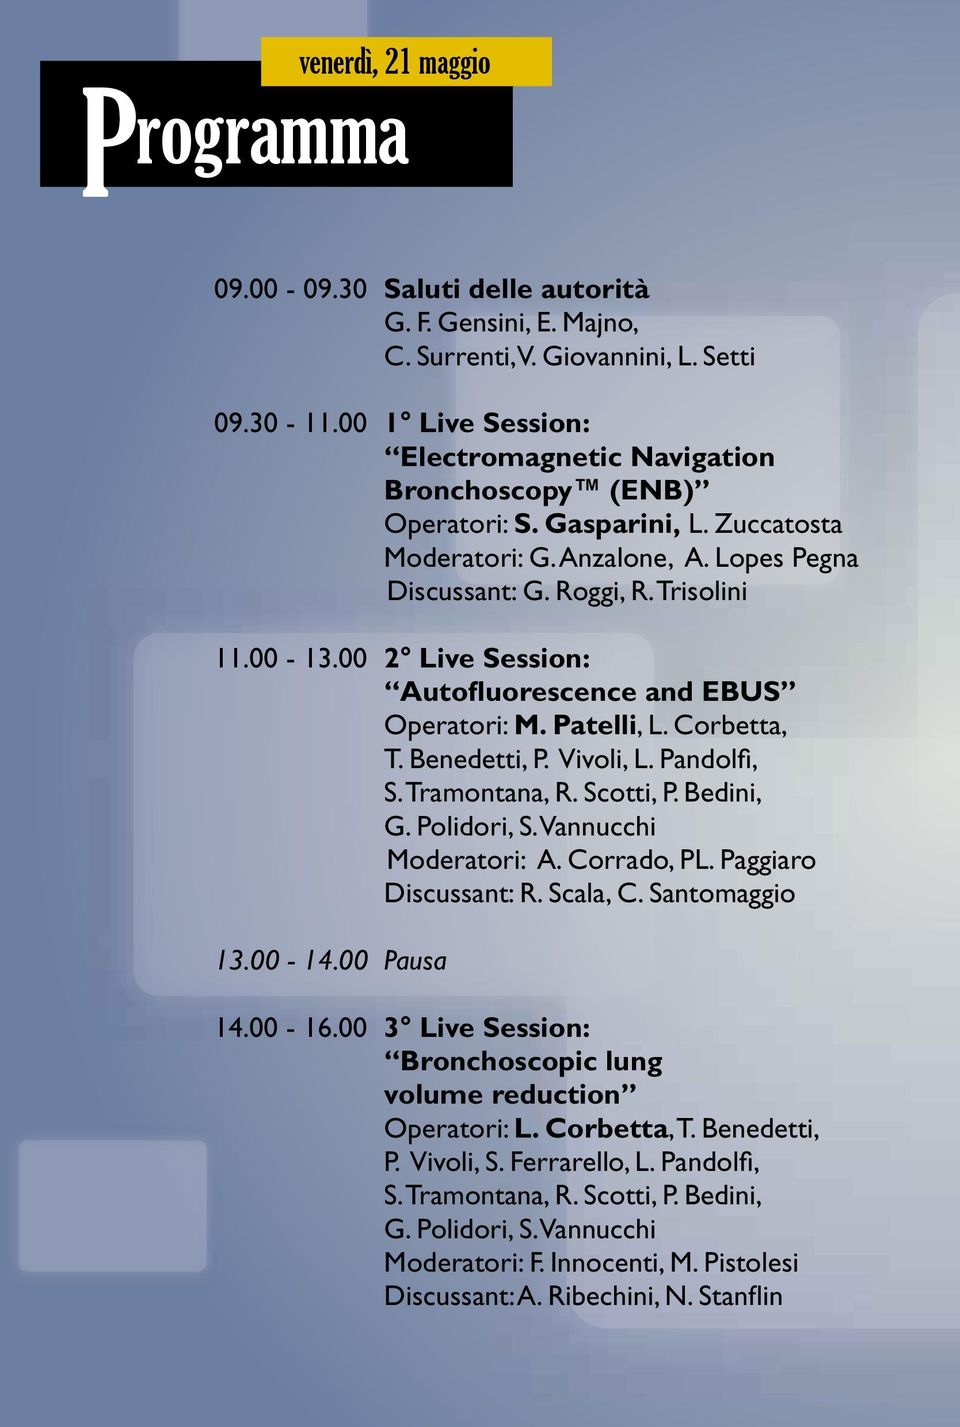 00 2 Live Session: Autofluorescence and EBUS operatori: M. Patelli, L. Corbetta, t. Benedetti, P. Vivoli, L. Pandolfi, s. Tramontana, R. Scotti, P. Bedini, g. Polidori, S. Vannucchi moderatori: A.